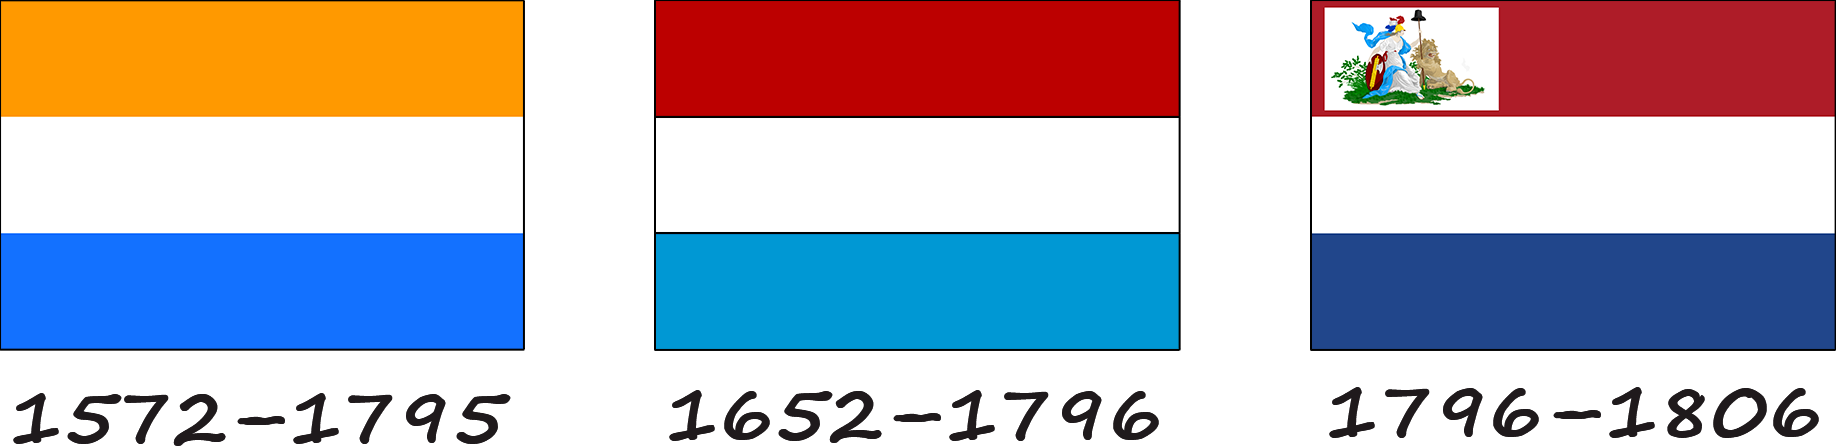 Історія нідерландського прапора